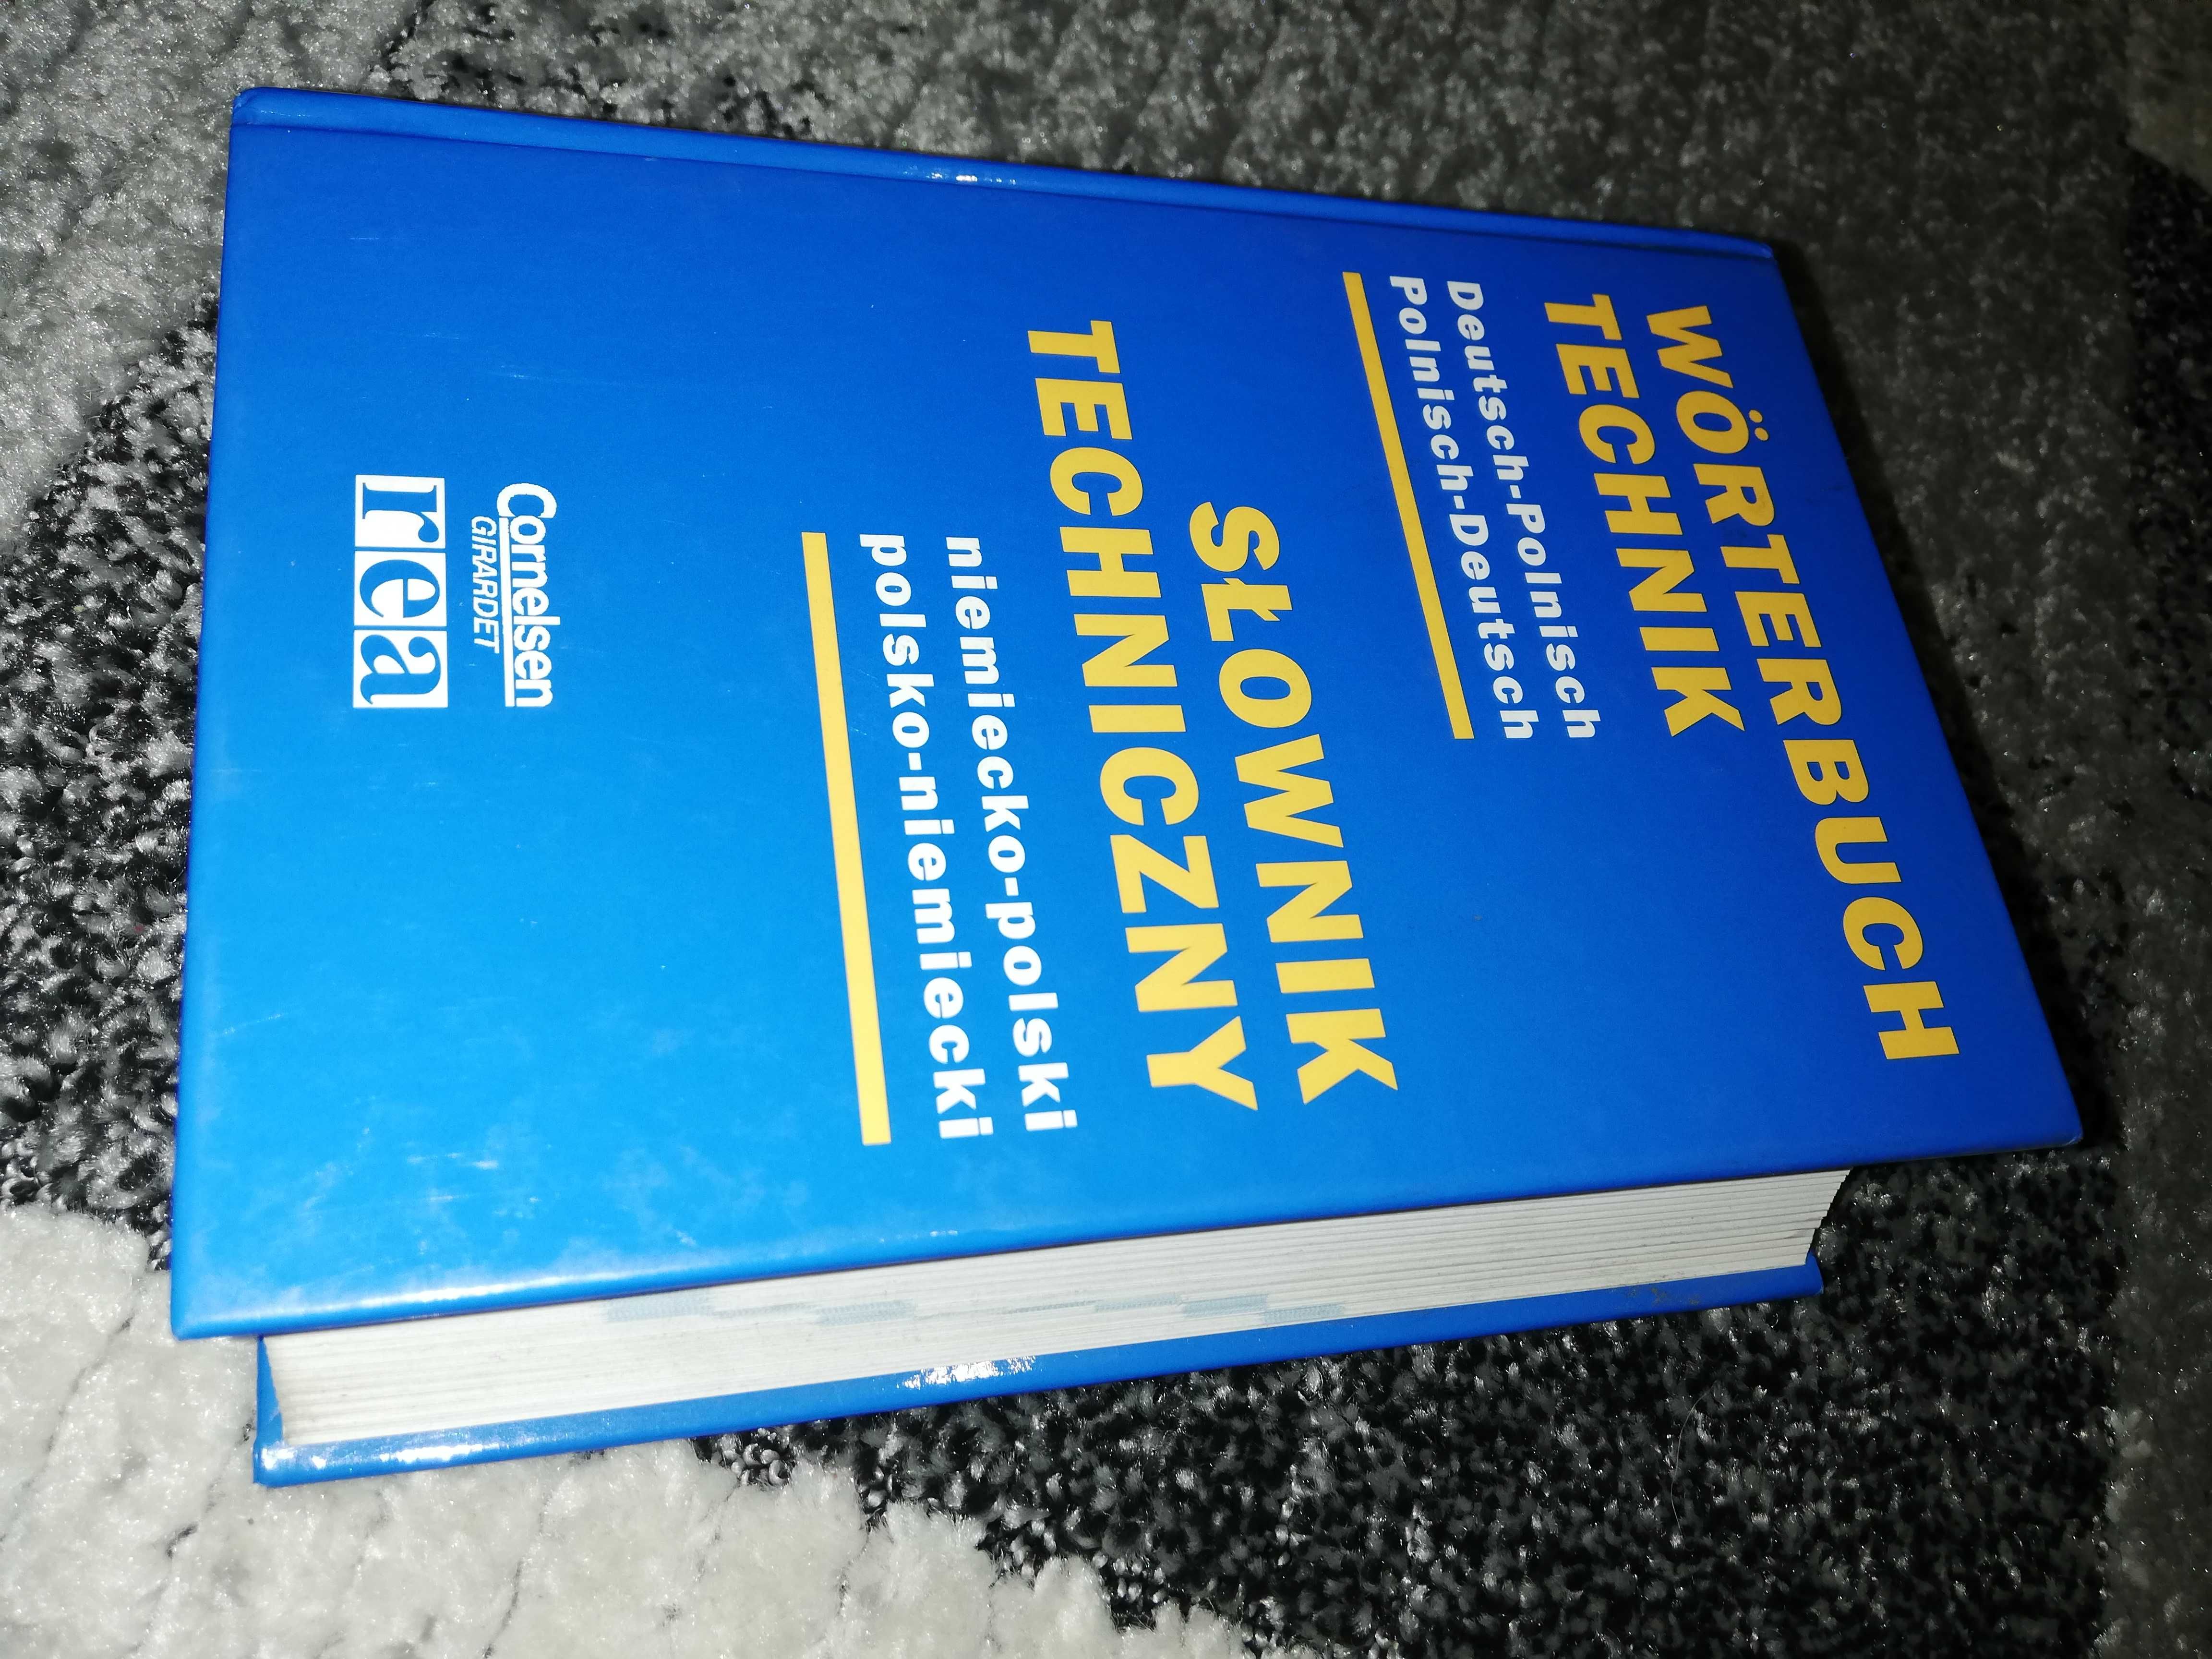 Worterbuch Technik Słownik techniczny